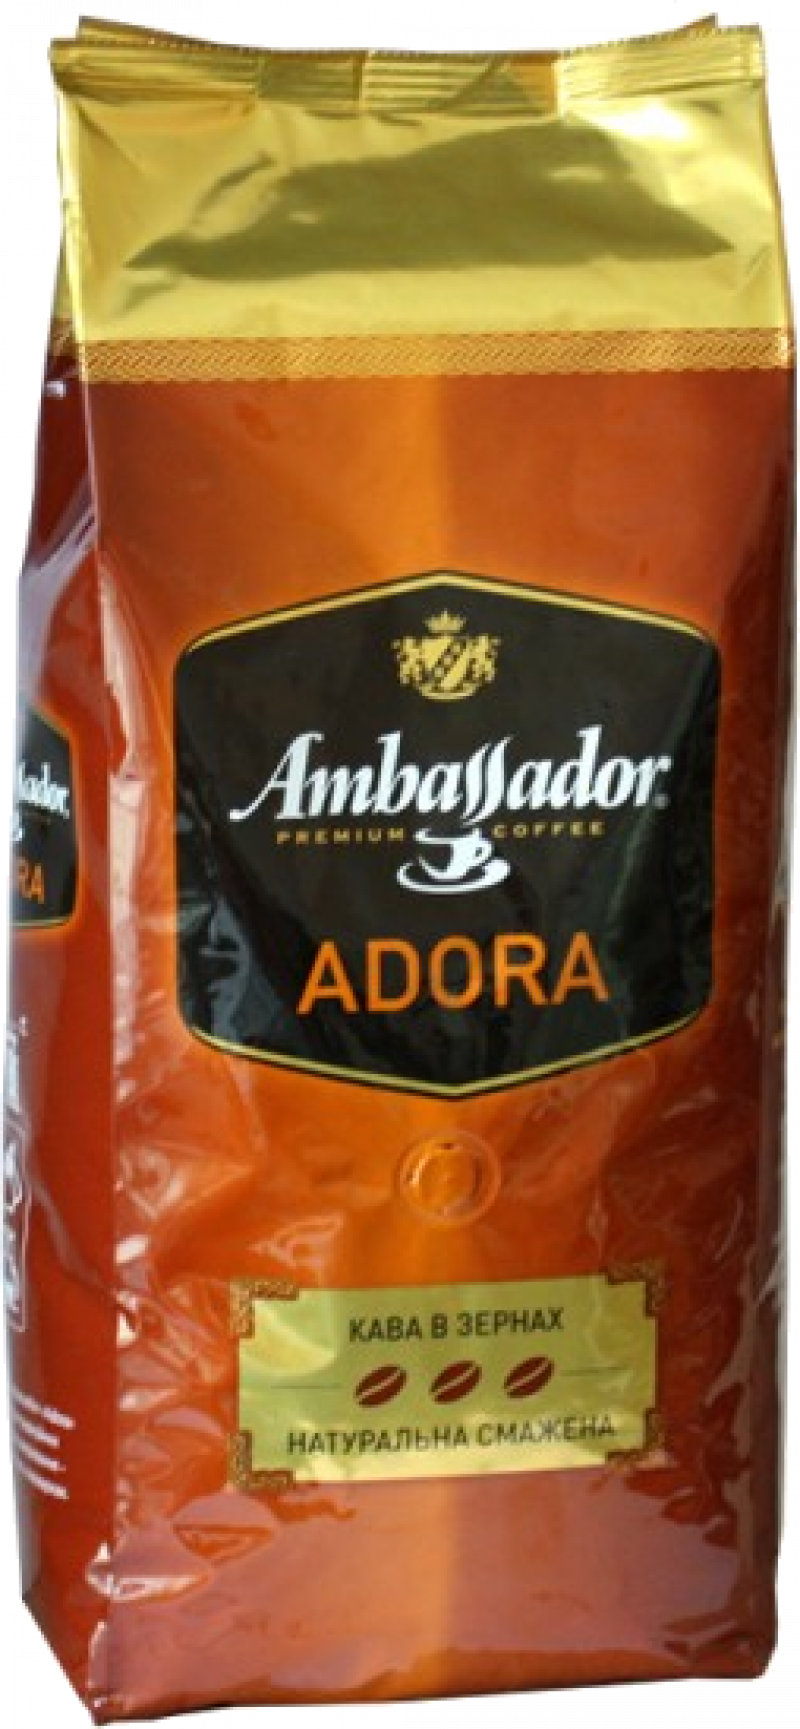 Кофе AMBASSADOR Adora кофе в зернах пакет, 0,9кг